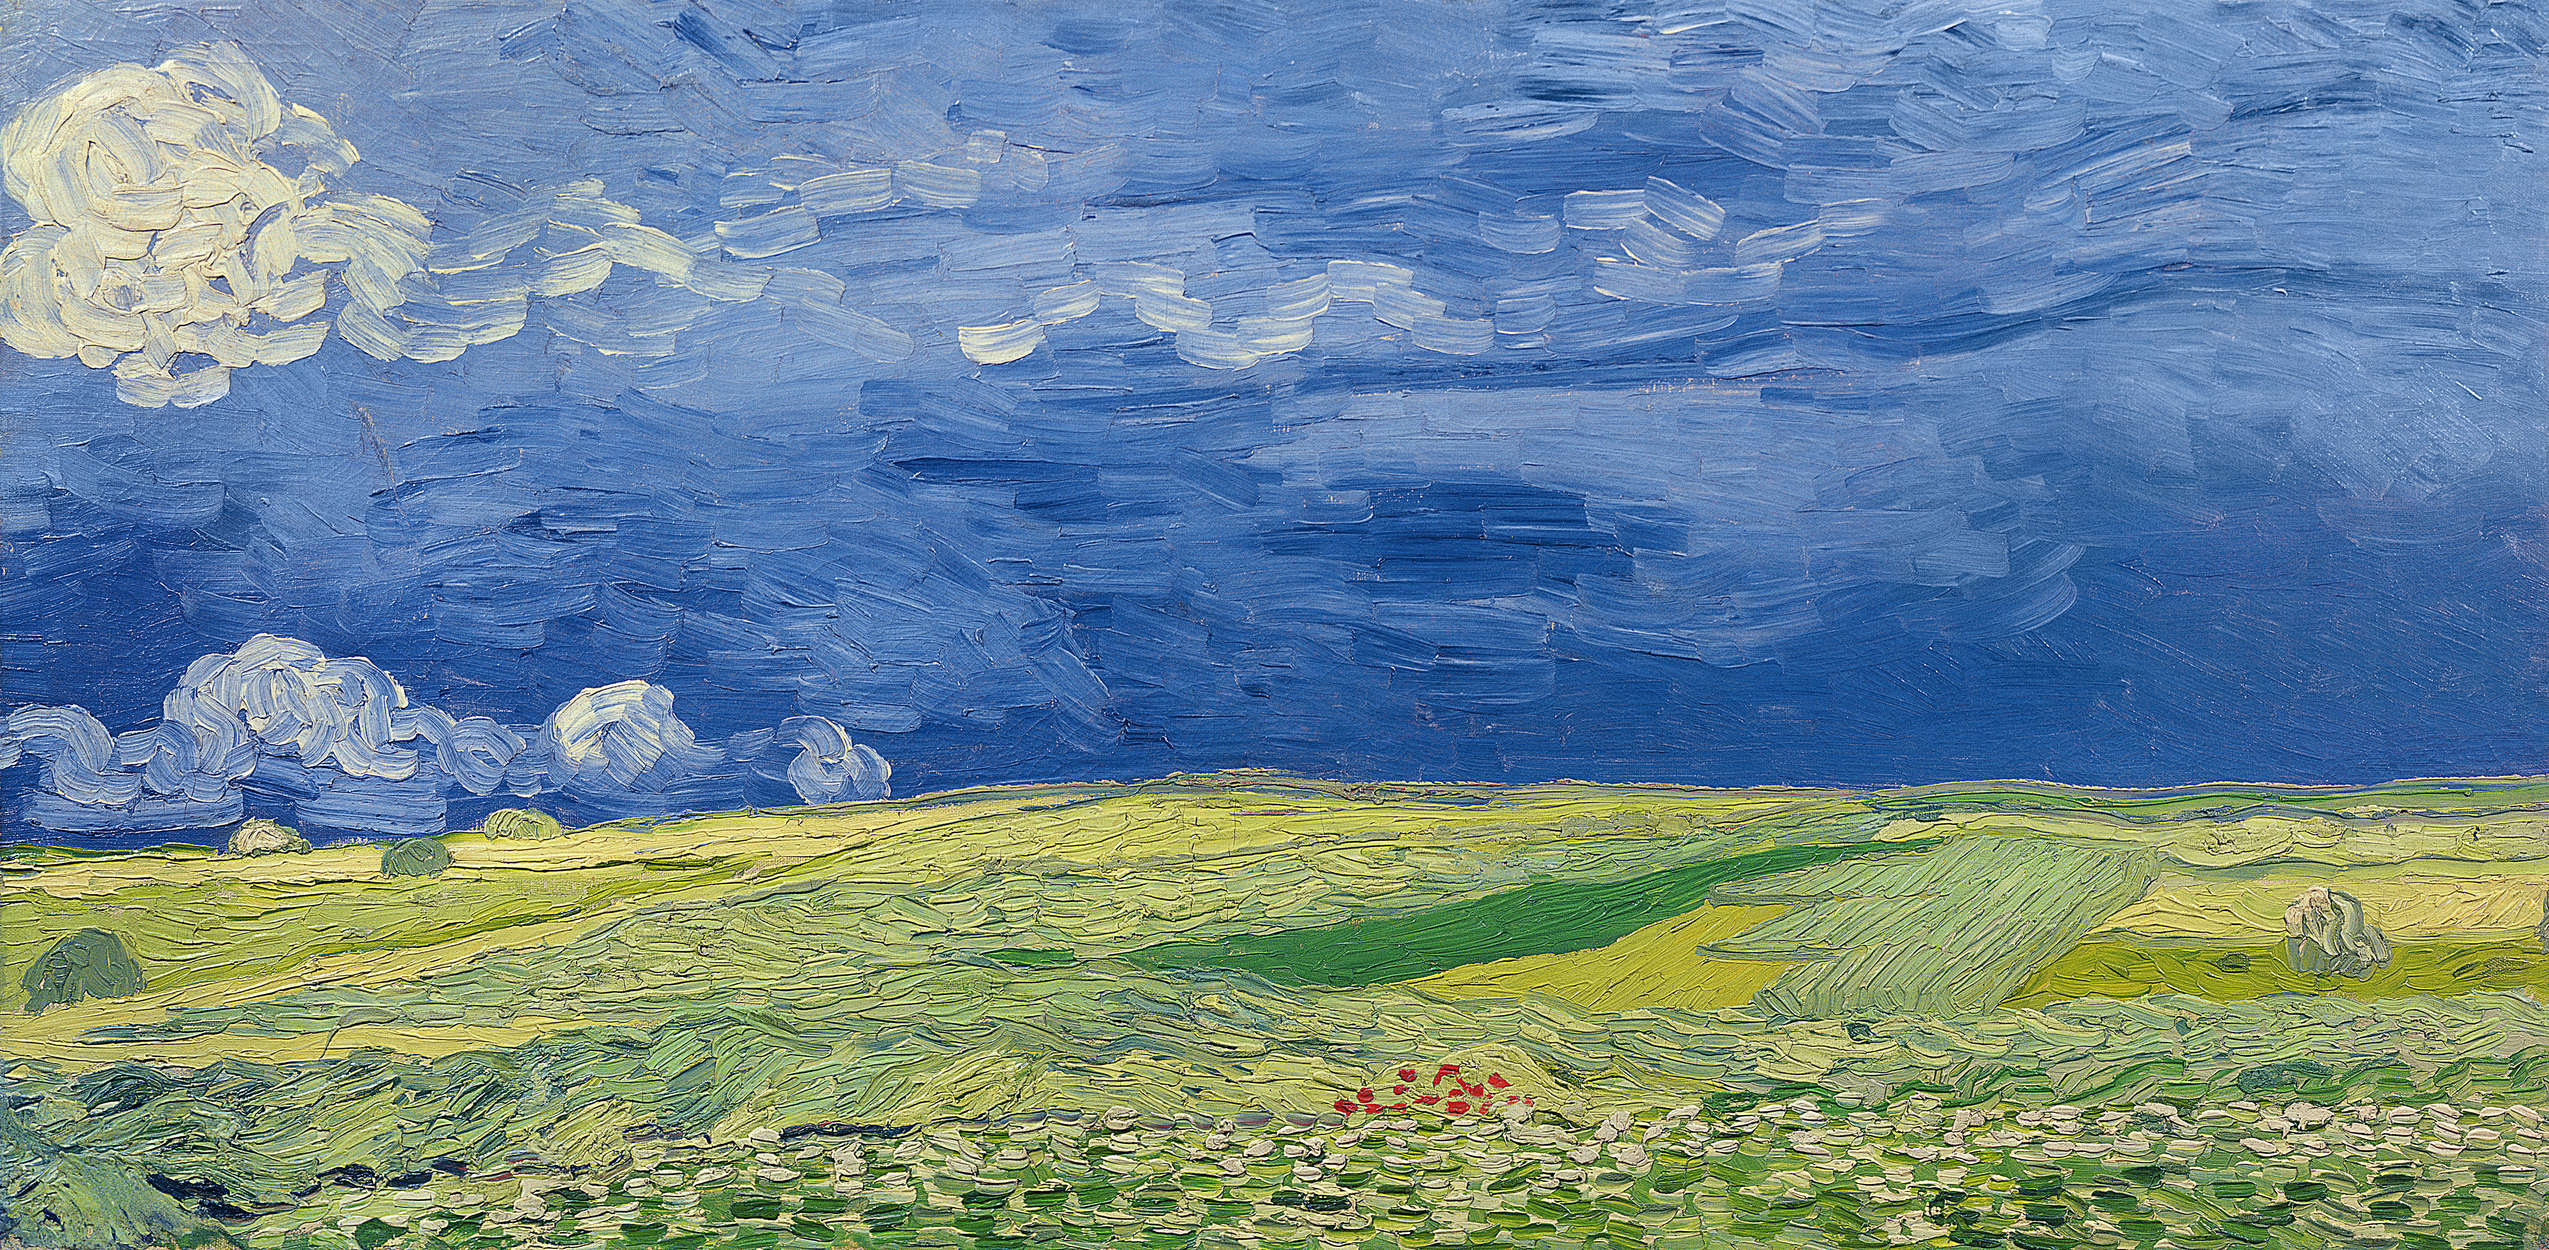             Fotomurali "Campi di grano sotto nuvole temporalesche" di Vincent van Gogh
        